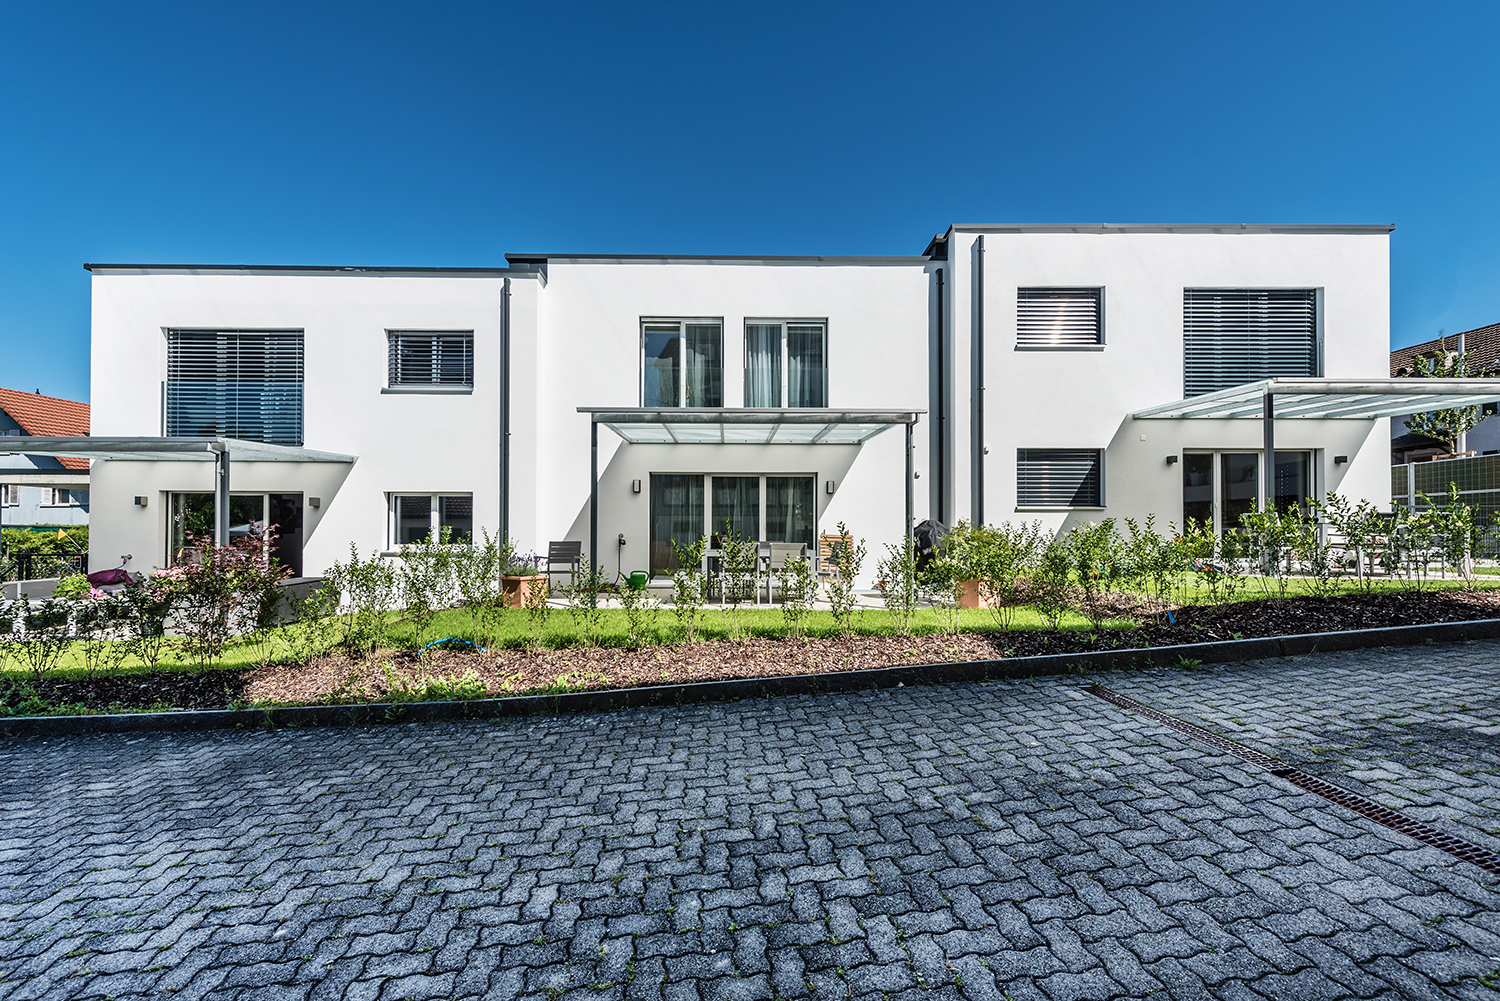 Parkettzauber in Kreuzlingen: Rinoparkett GmbH verleiht den neuen Reihen-Einfamilienhäusern an der Egelseestrasse eine stilvolle Note.